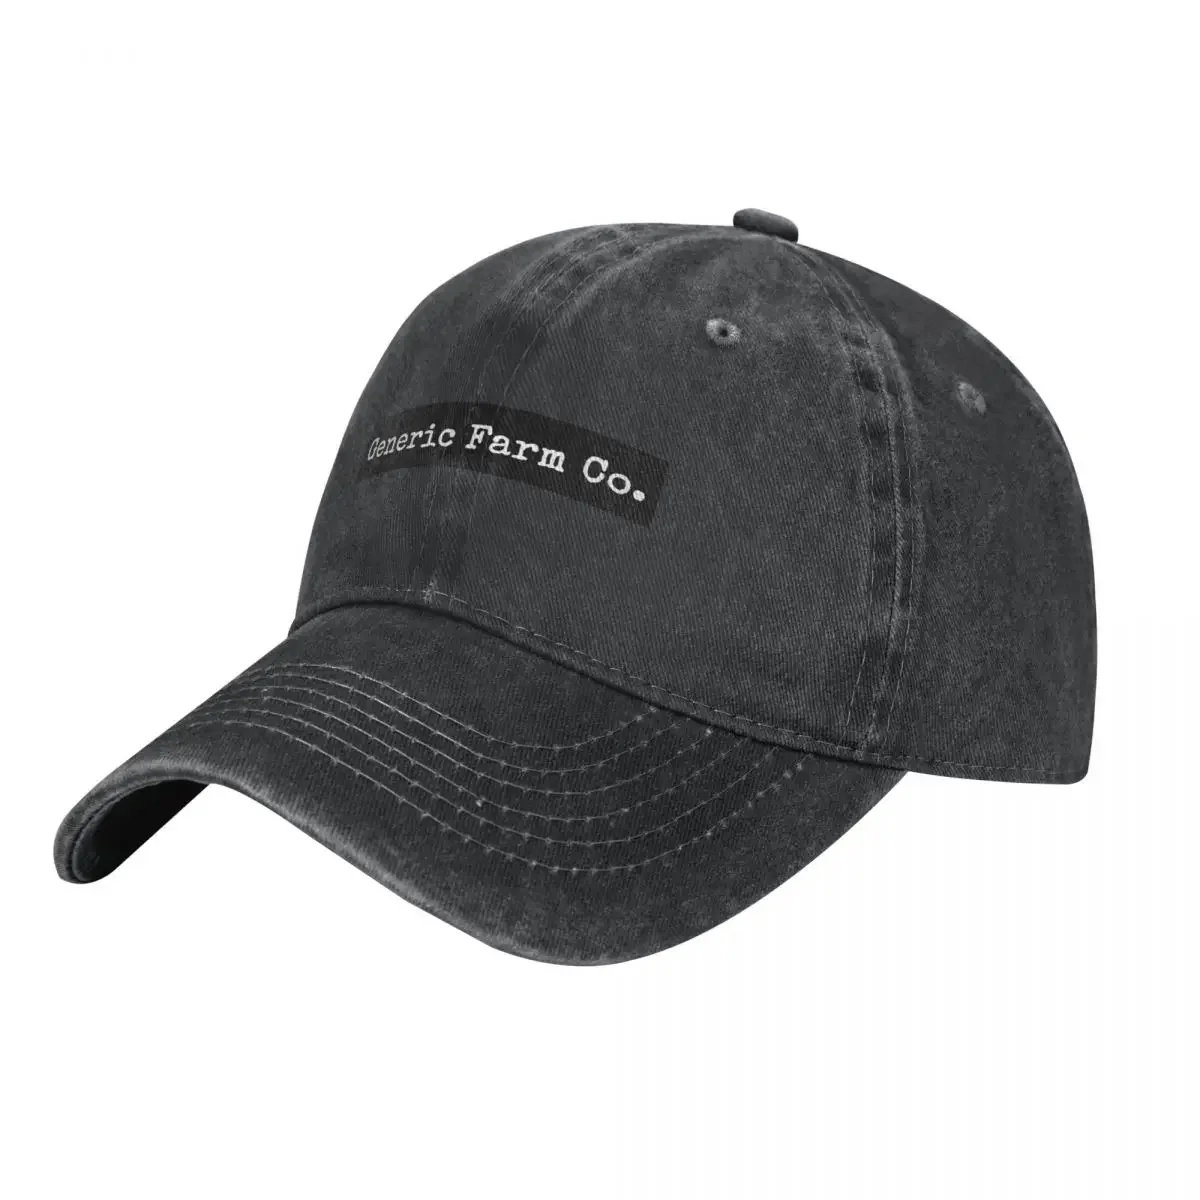 

Generic Farm Co. Cowboy Hat funny hat Sun Cap beach hat sun Woman Hats Men's